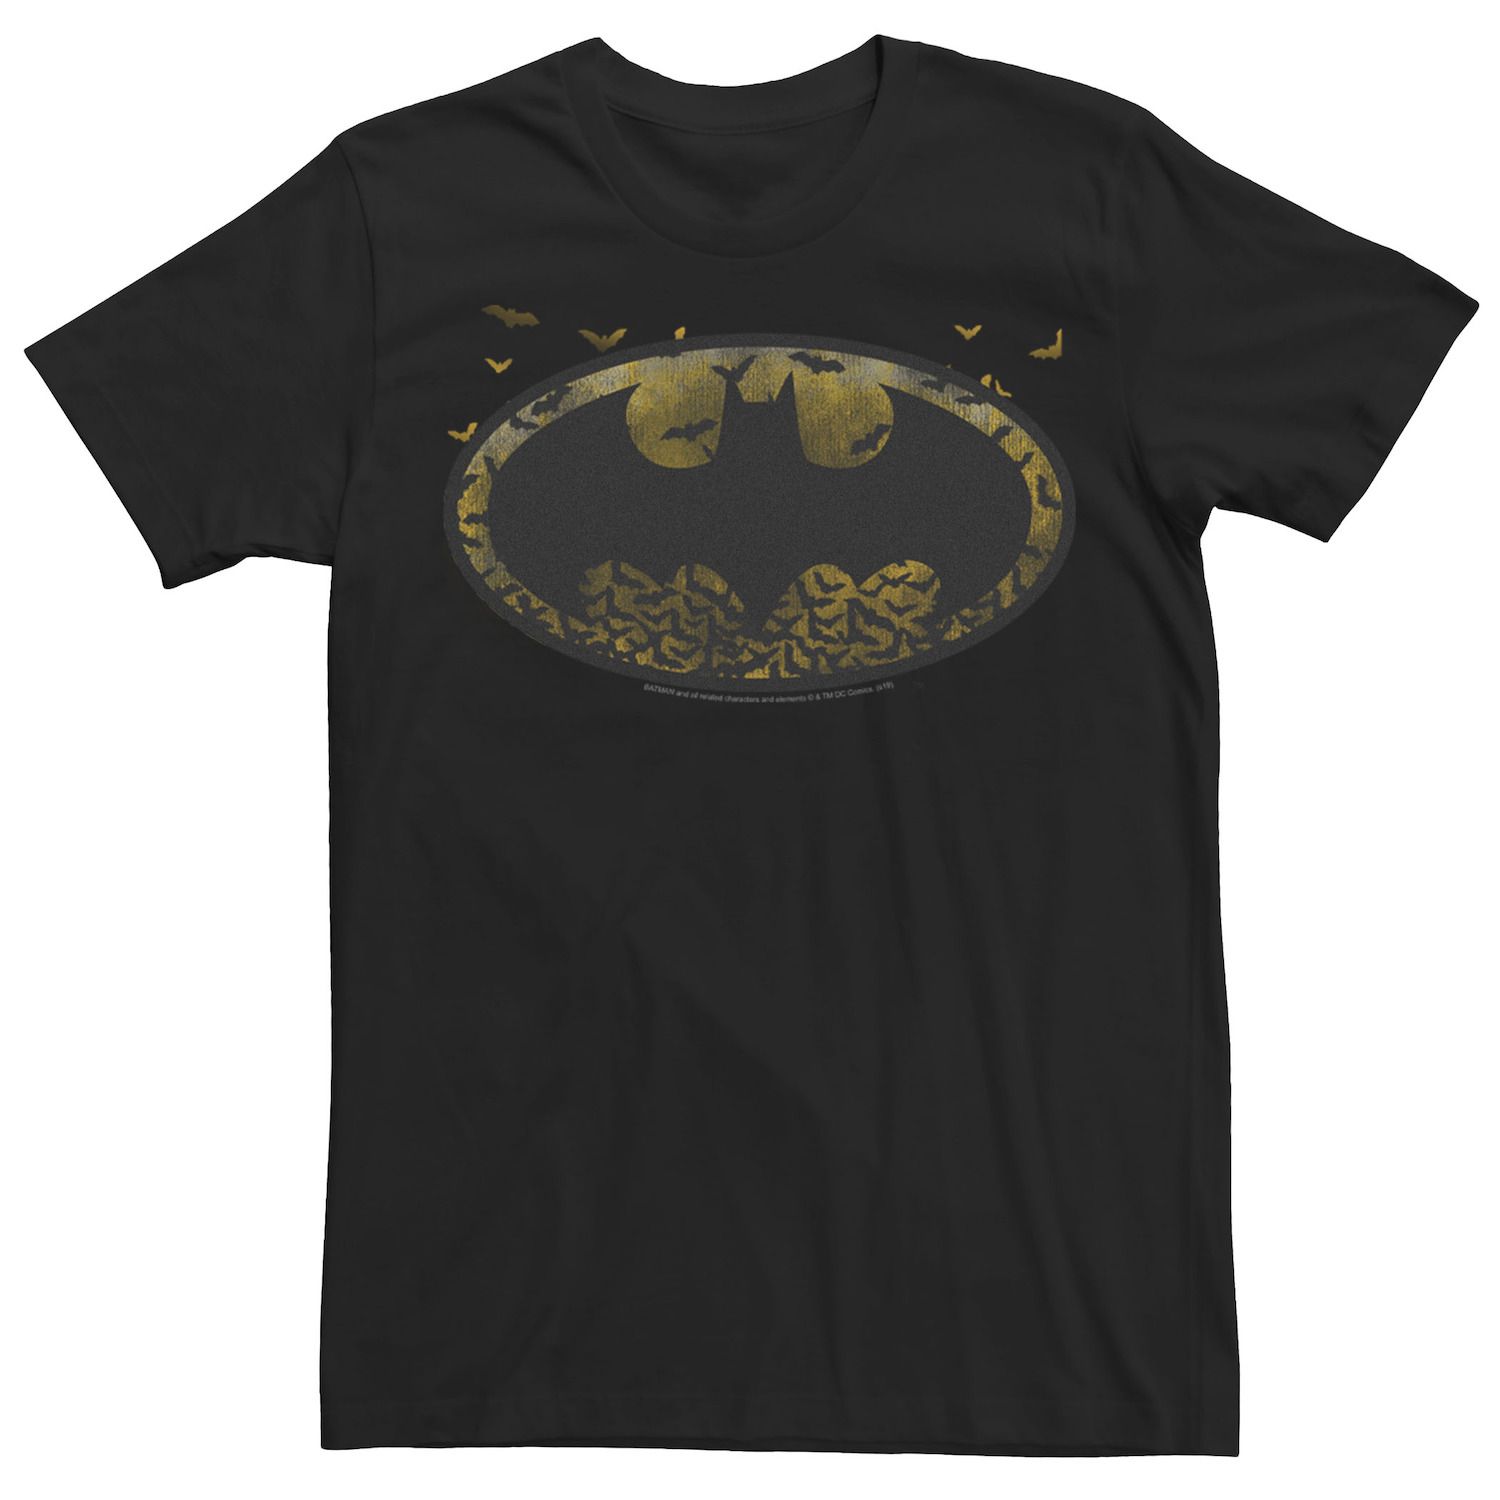 Мужская футболка с логотипом Batman DC Comics